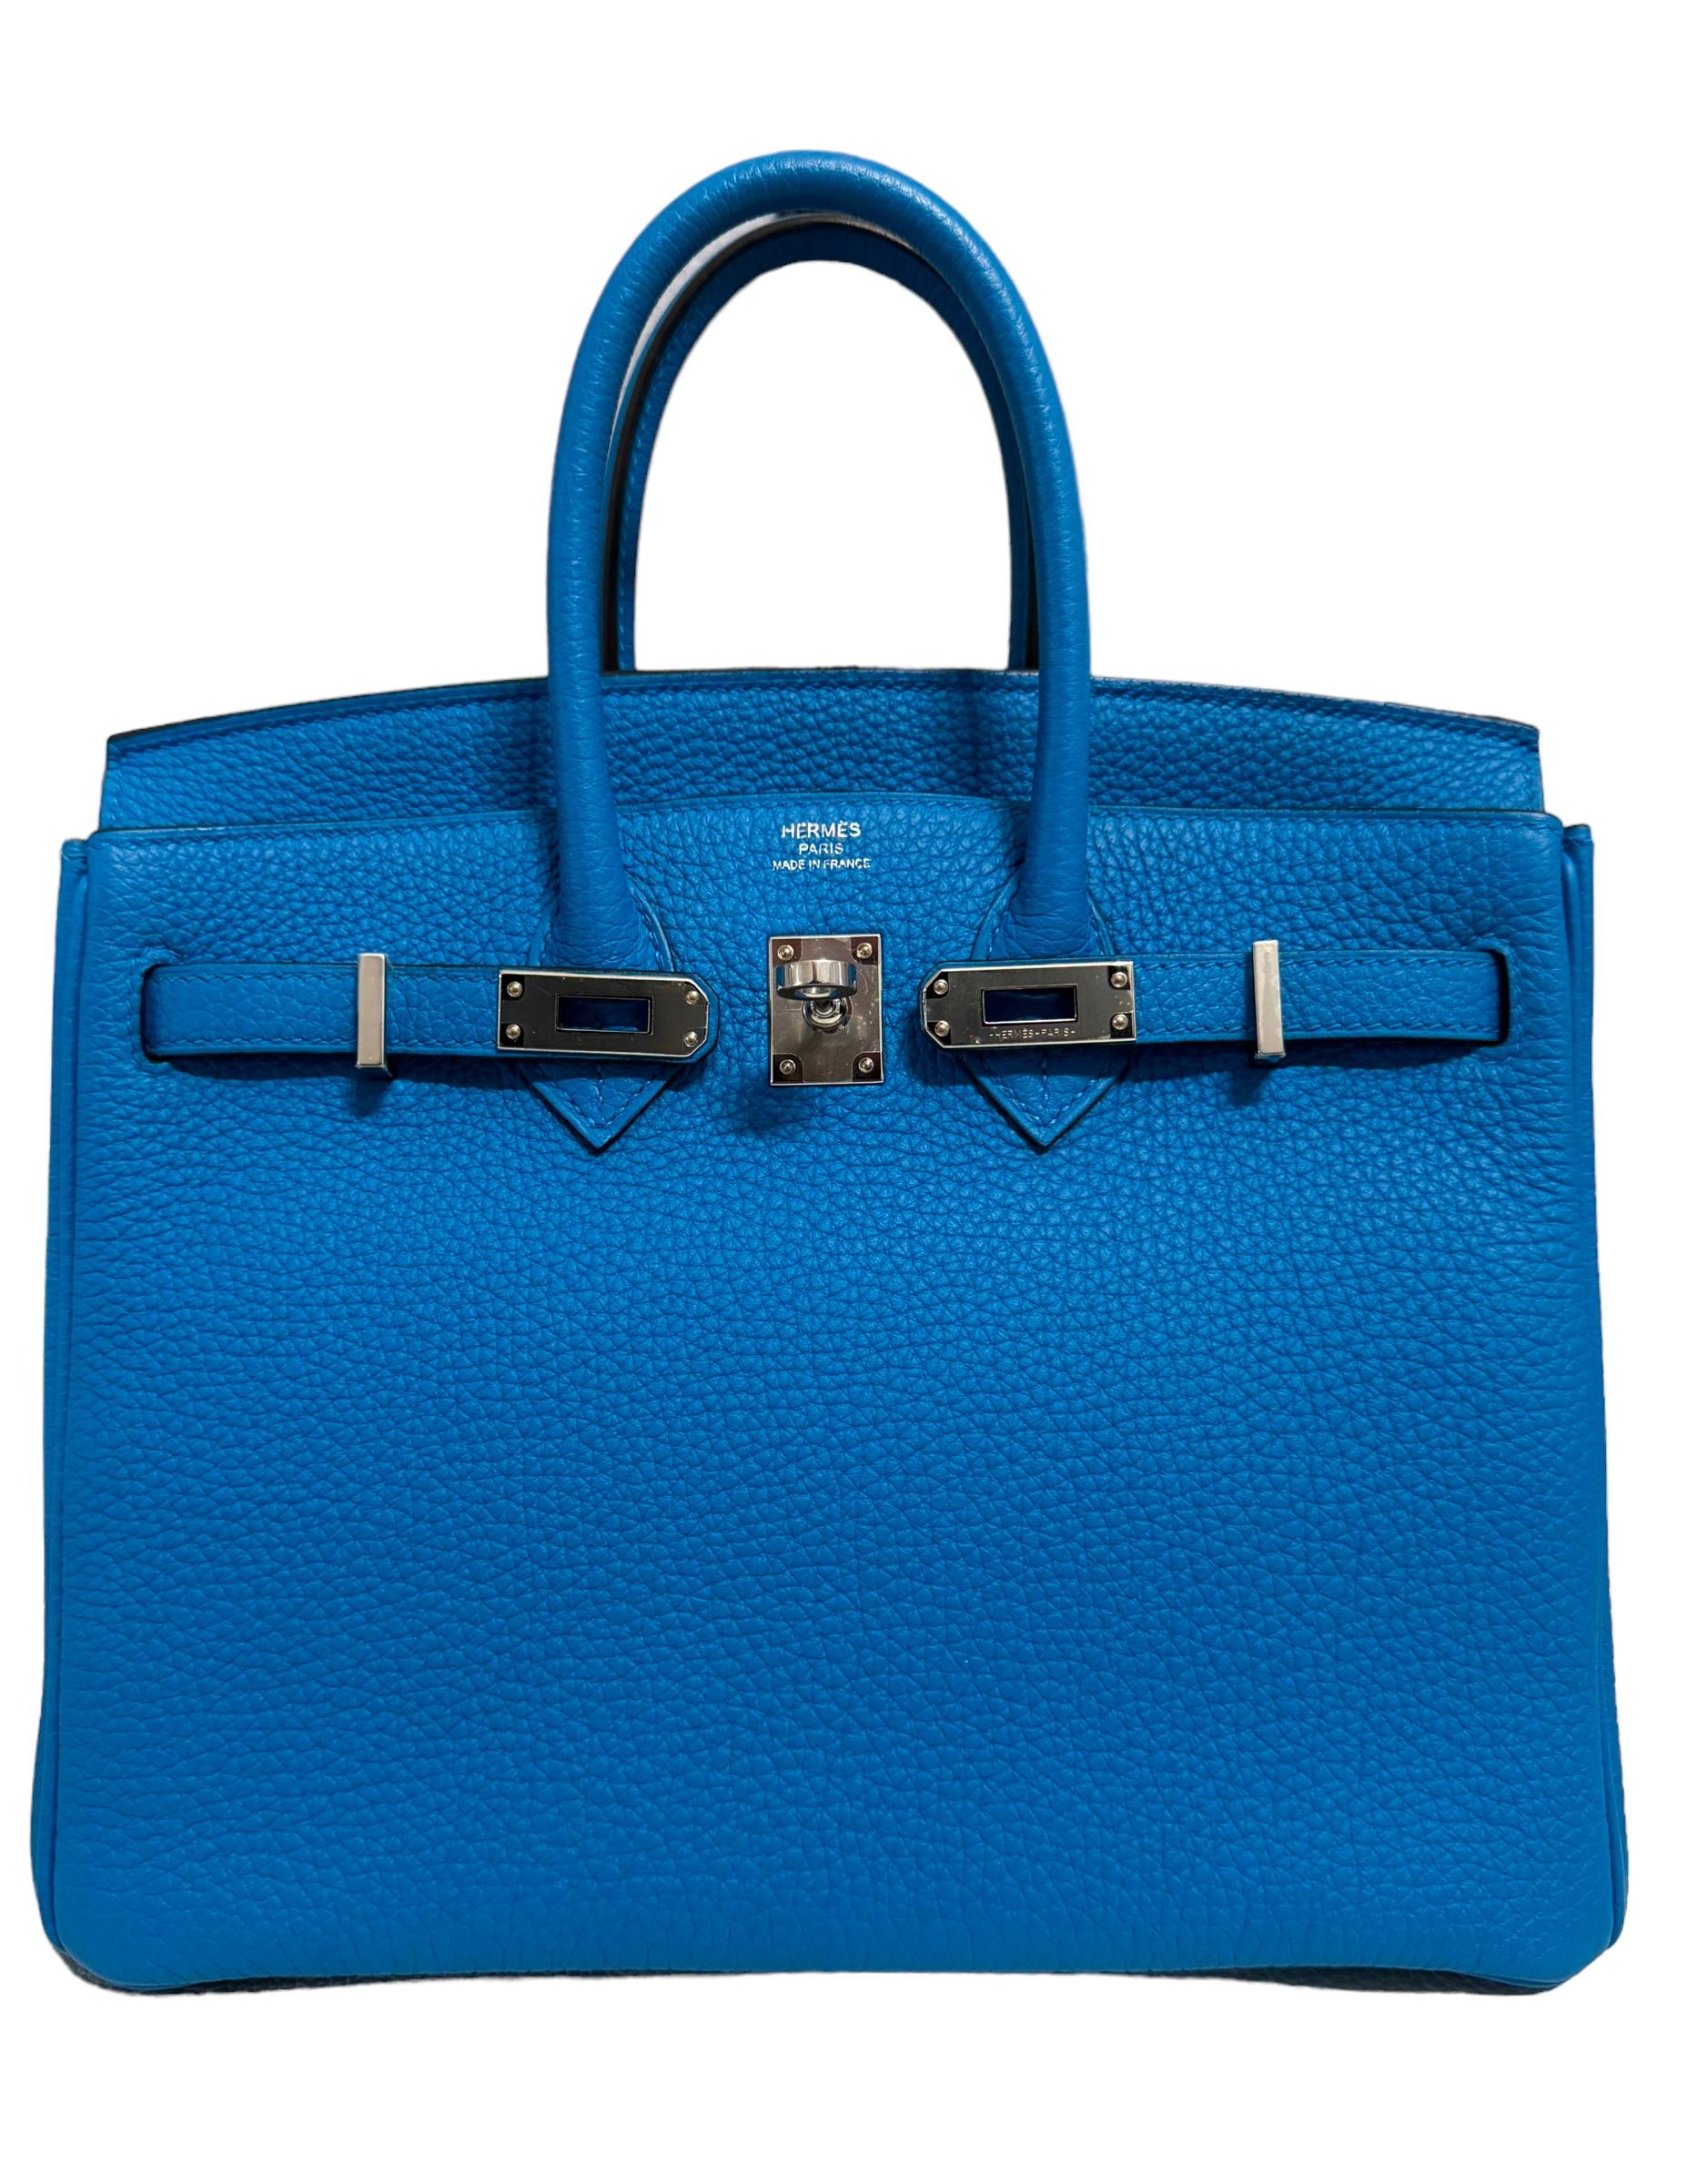 Absolument rare, superbe et très convoité, le Birkin 25 bleu de Hermès en cuir Togo Zanzibar est complété par une quincaillerie en palladium. Plastique sur quincaillerie en parfait état, structure et coins excellents. Porté seulement quelques fois.